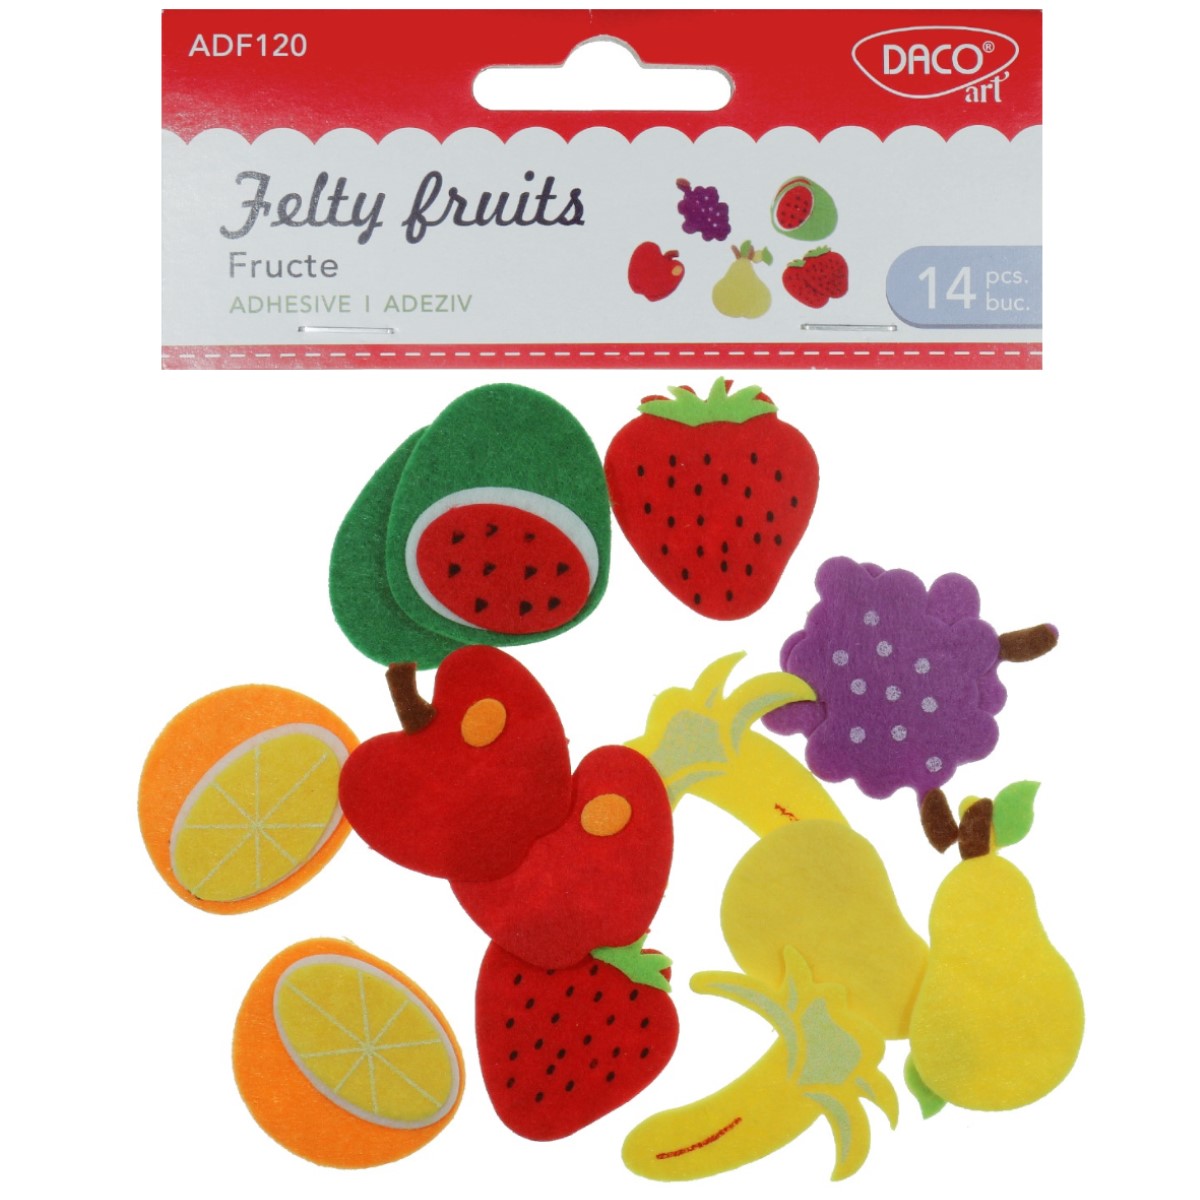 Fructe pasla cu adeziv 14 set Daco AD120